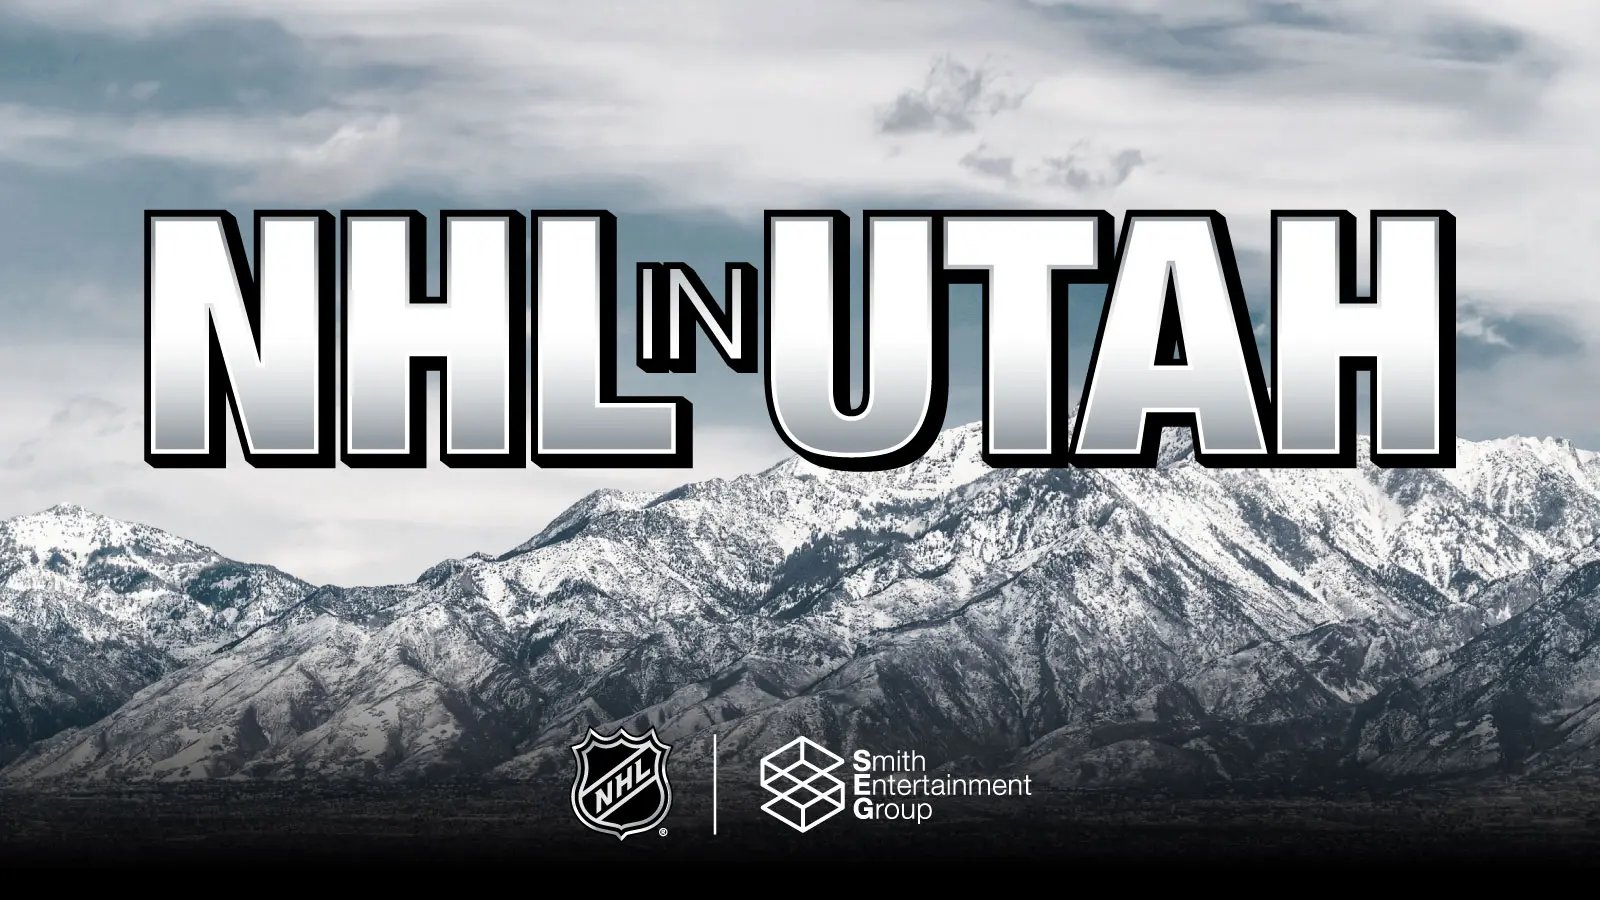 On a demandé à l'IA de créer des logos pour le club du Utah et voici le résultat